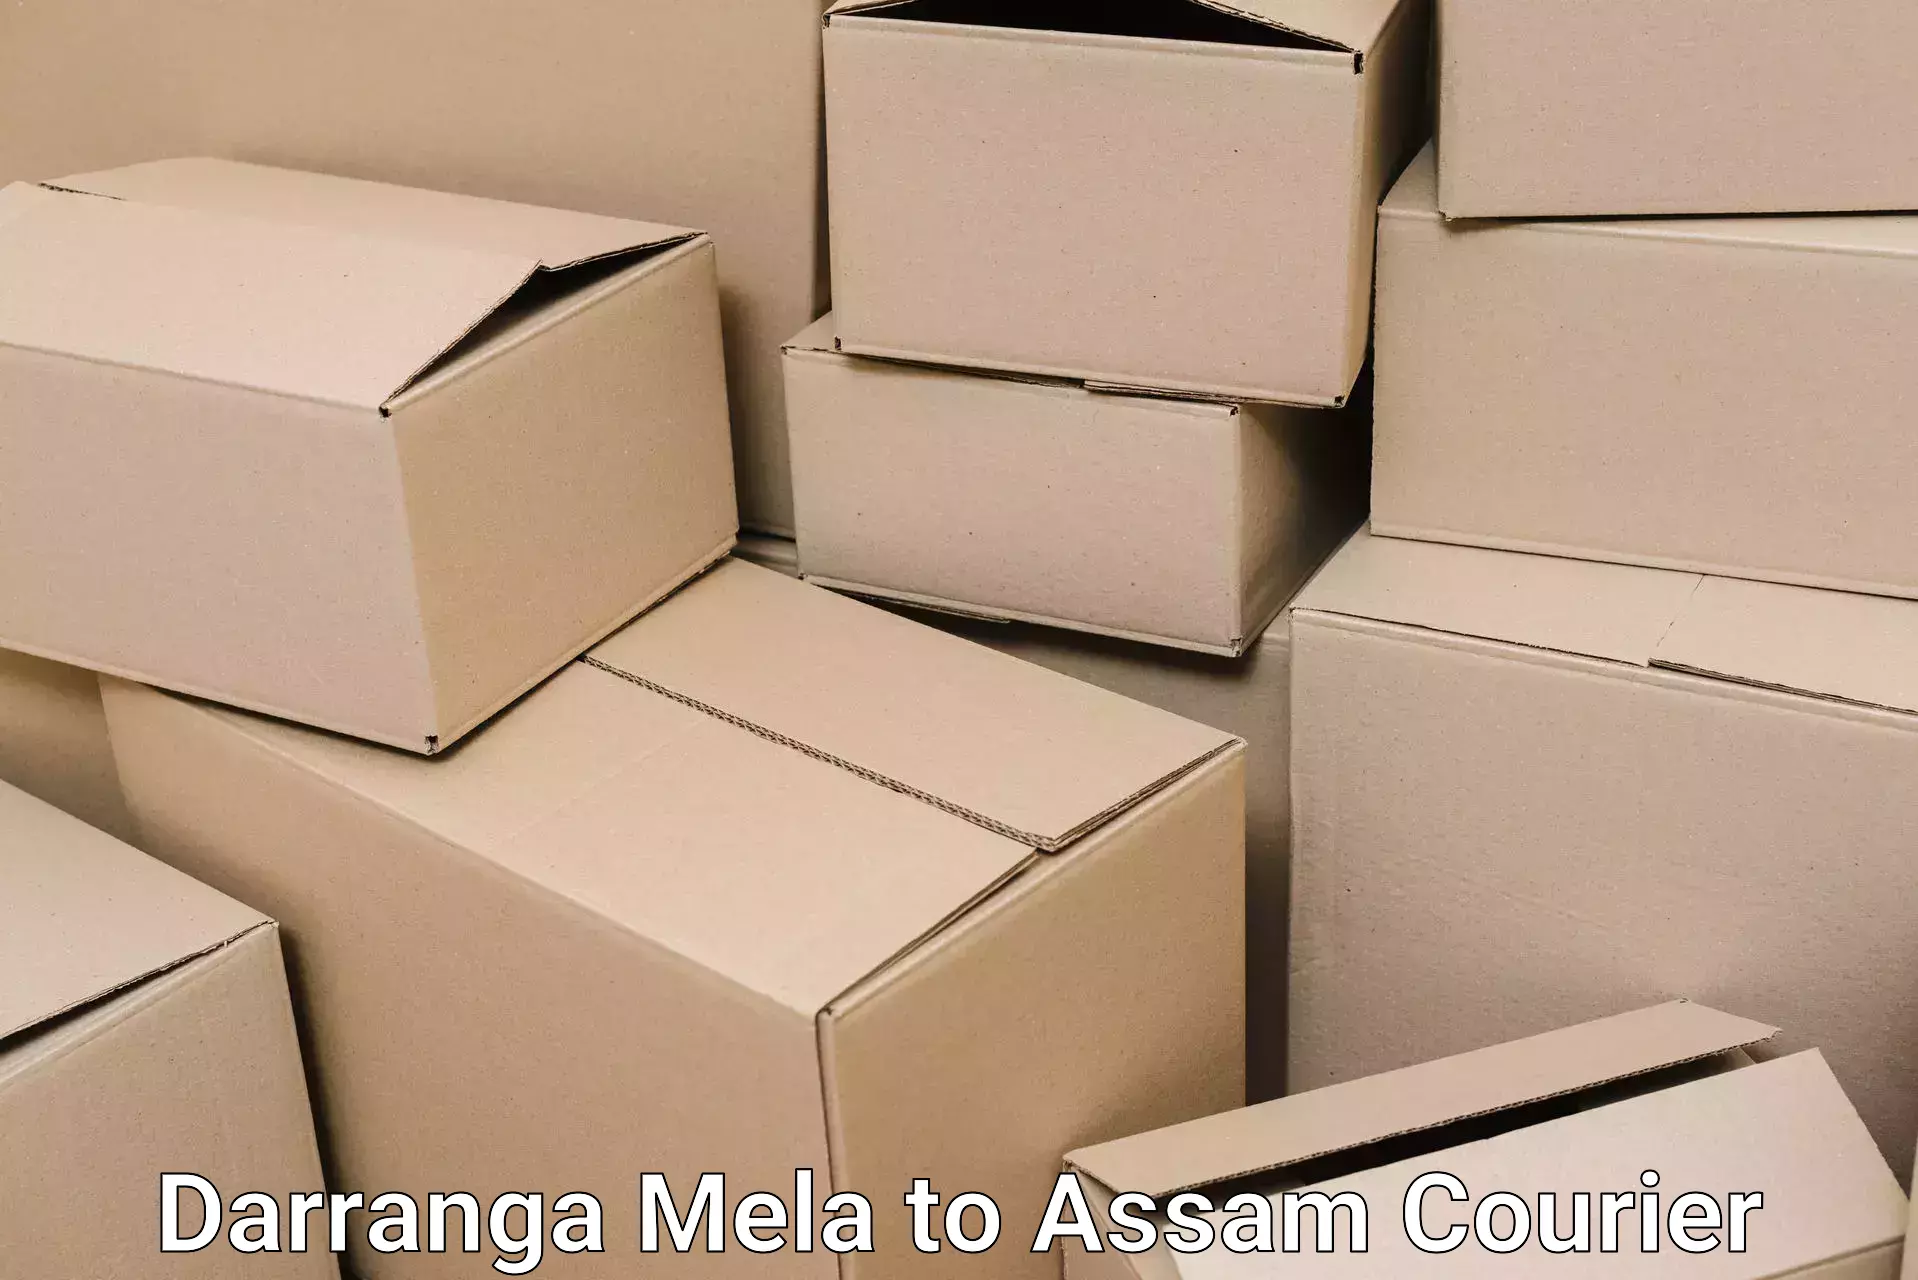 Local home movers Darranga Mela to Assam